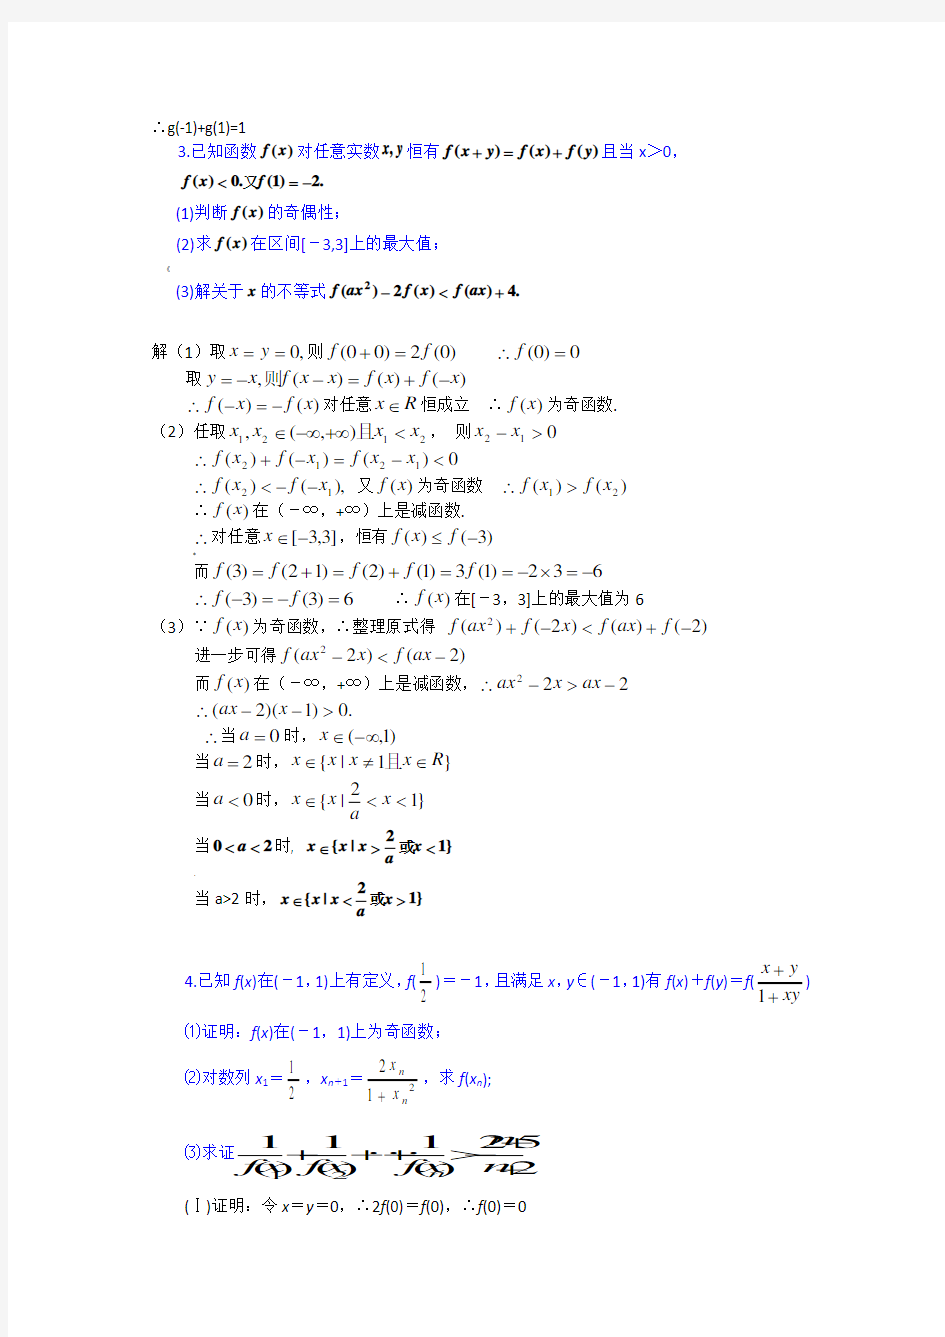 抽象函数经典综合题33例(含详细解答)